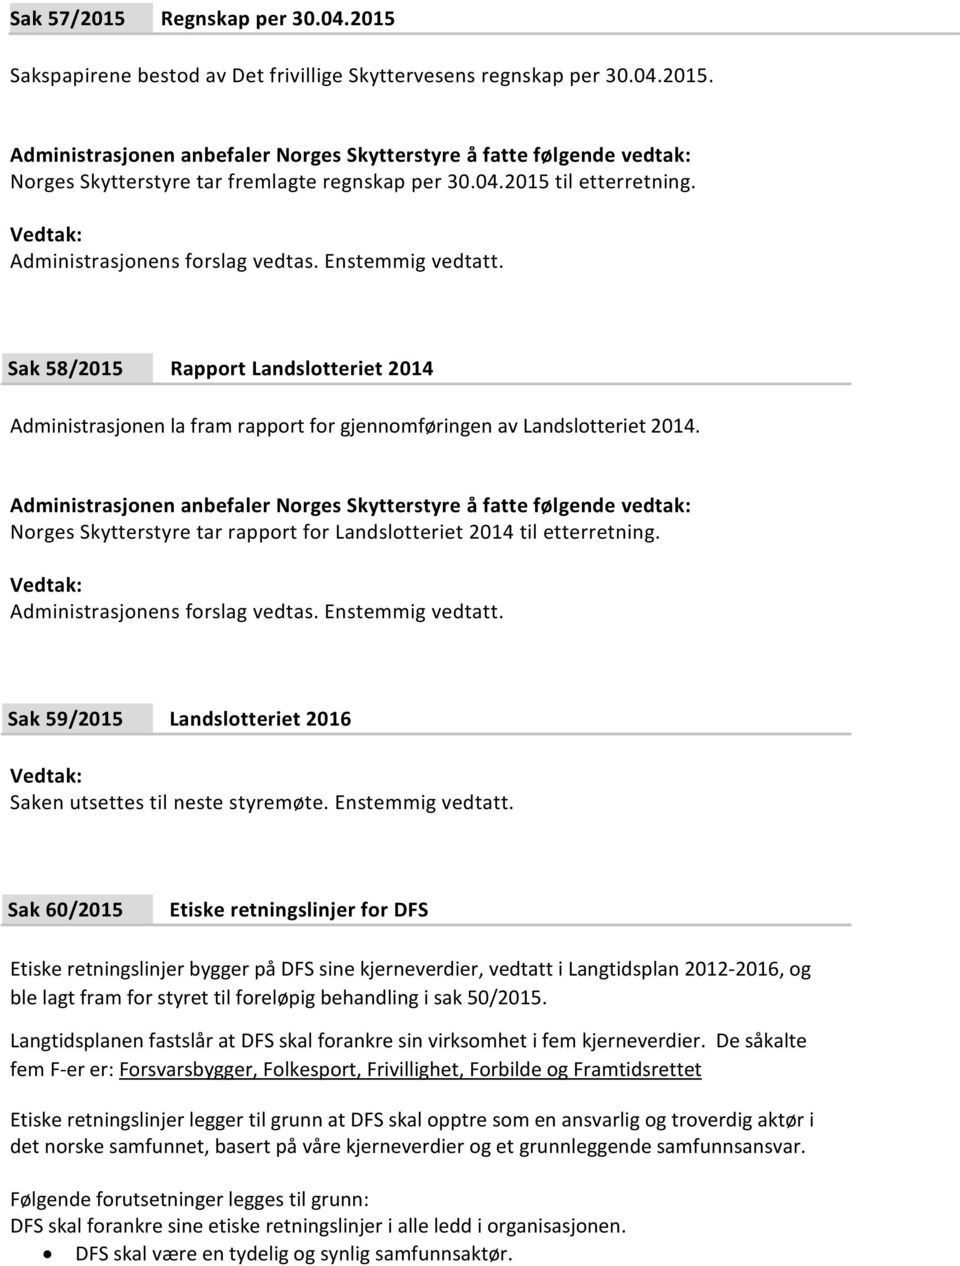 Norges Skytterstyre tar rapport for Landslotteriet 2014 til etterretning. Administrasjonens forslag vedtas. Enstemmig vedtatt. Sak 59/2015 Landslotteriet 2016 Saken utsettes til neste styremøte.